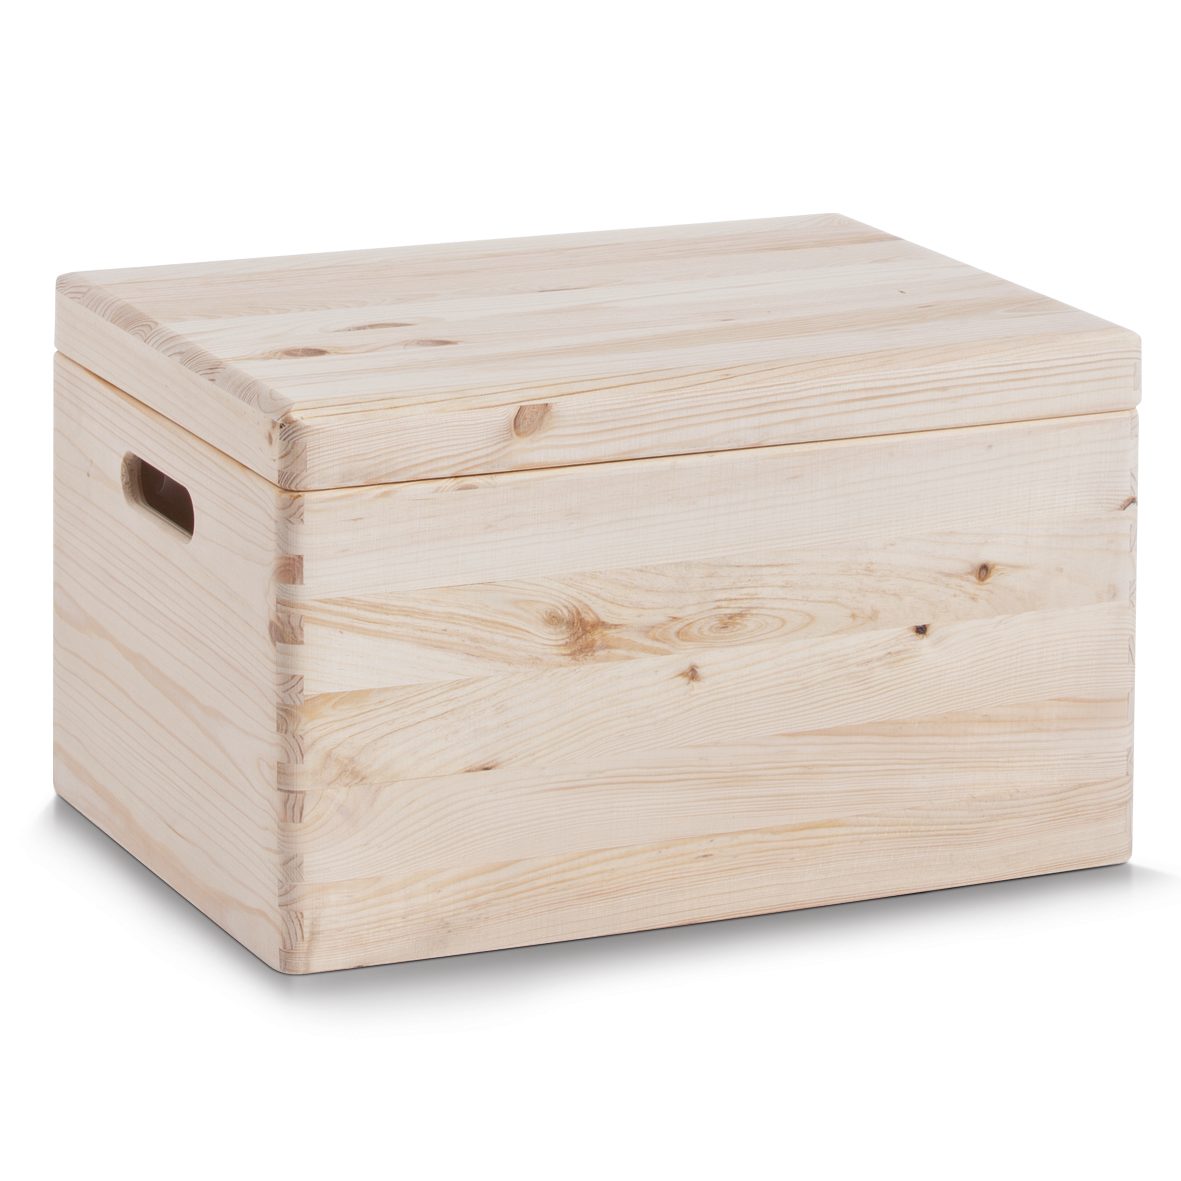 Aufbewahrungsbox Zeller present aus Holz in Holzfarben Allzweckkiste mit Deckel unbehandeltes Kiefernholz - ca. 40 x 30 cm